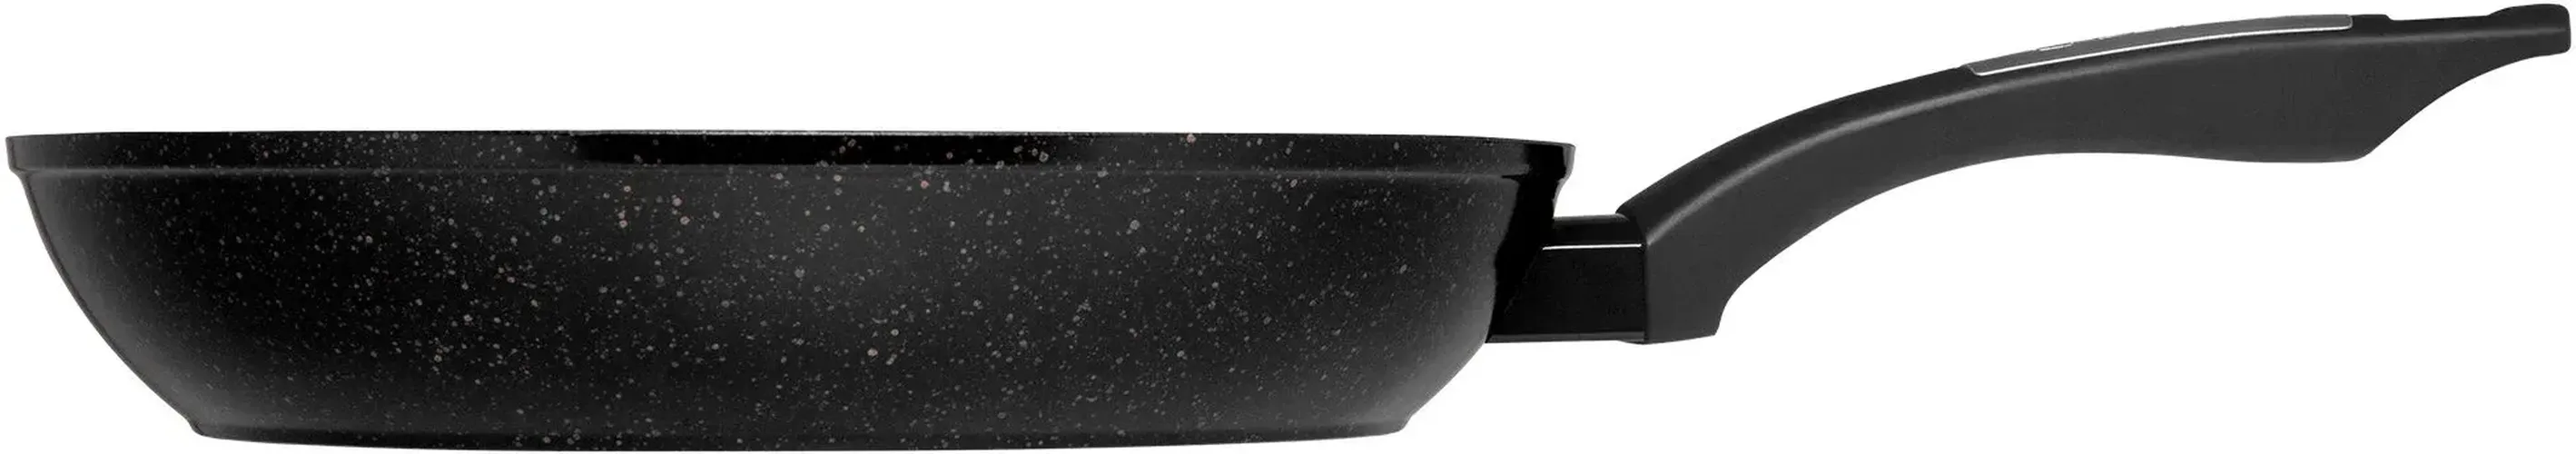 Сковорода Polaris Monolit-24F, 24 см, Черный, купить недорого